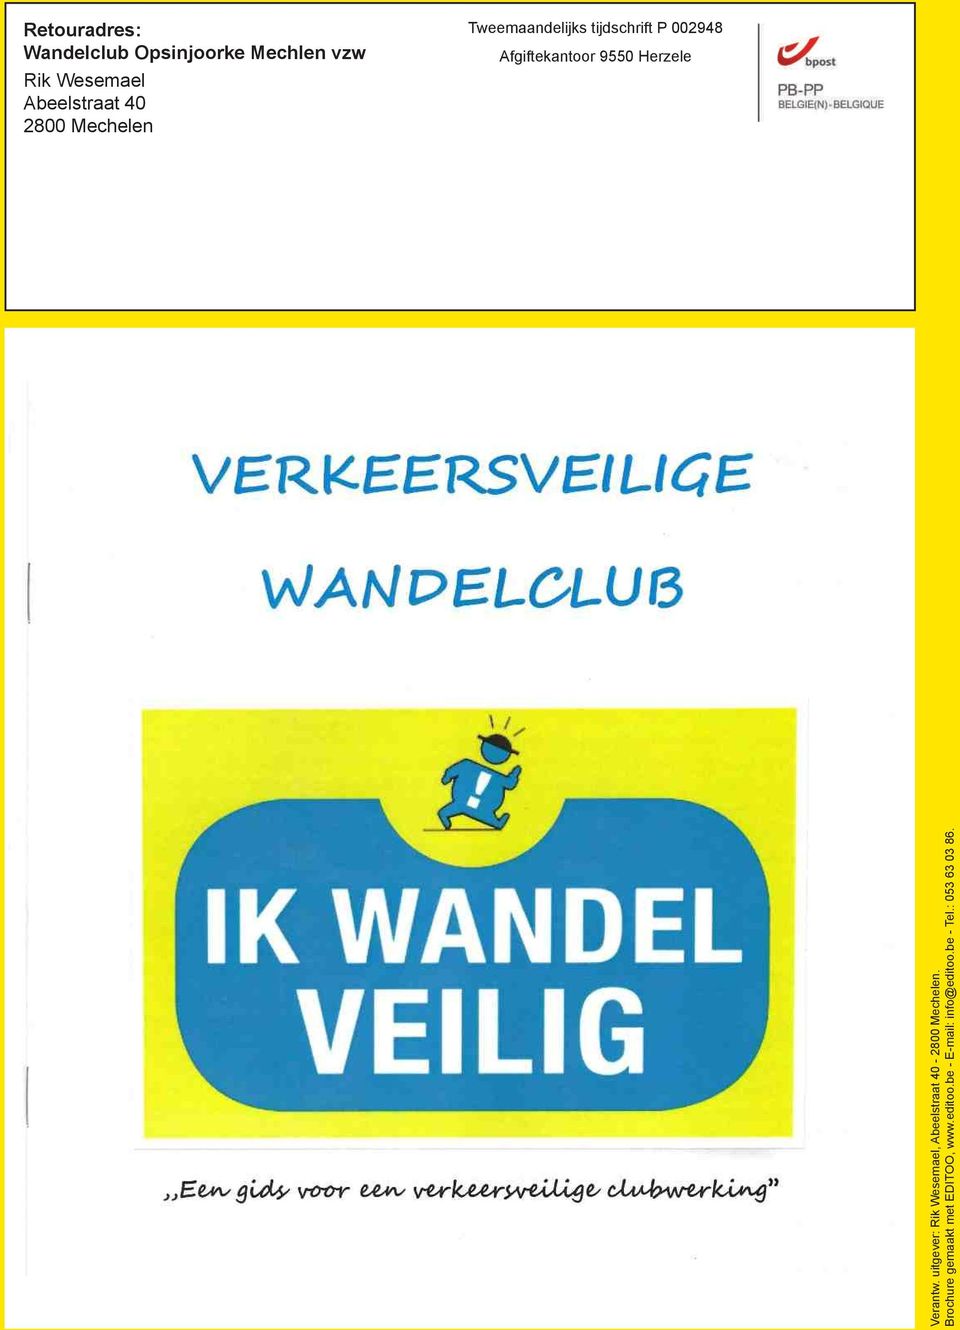 Herzele Verantw. uitgever: Rik Wesemael, Abeelstraat 40-2800 Mechelen.